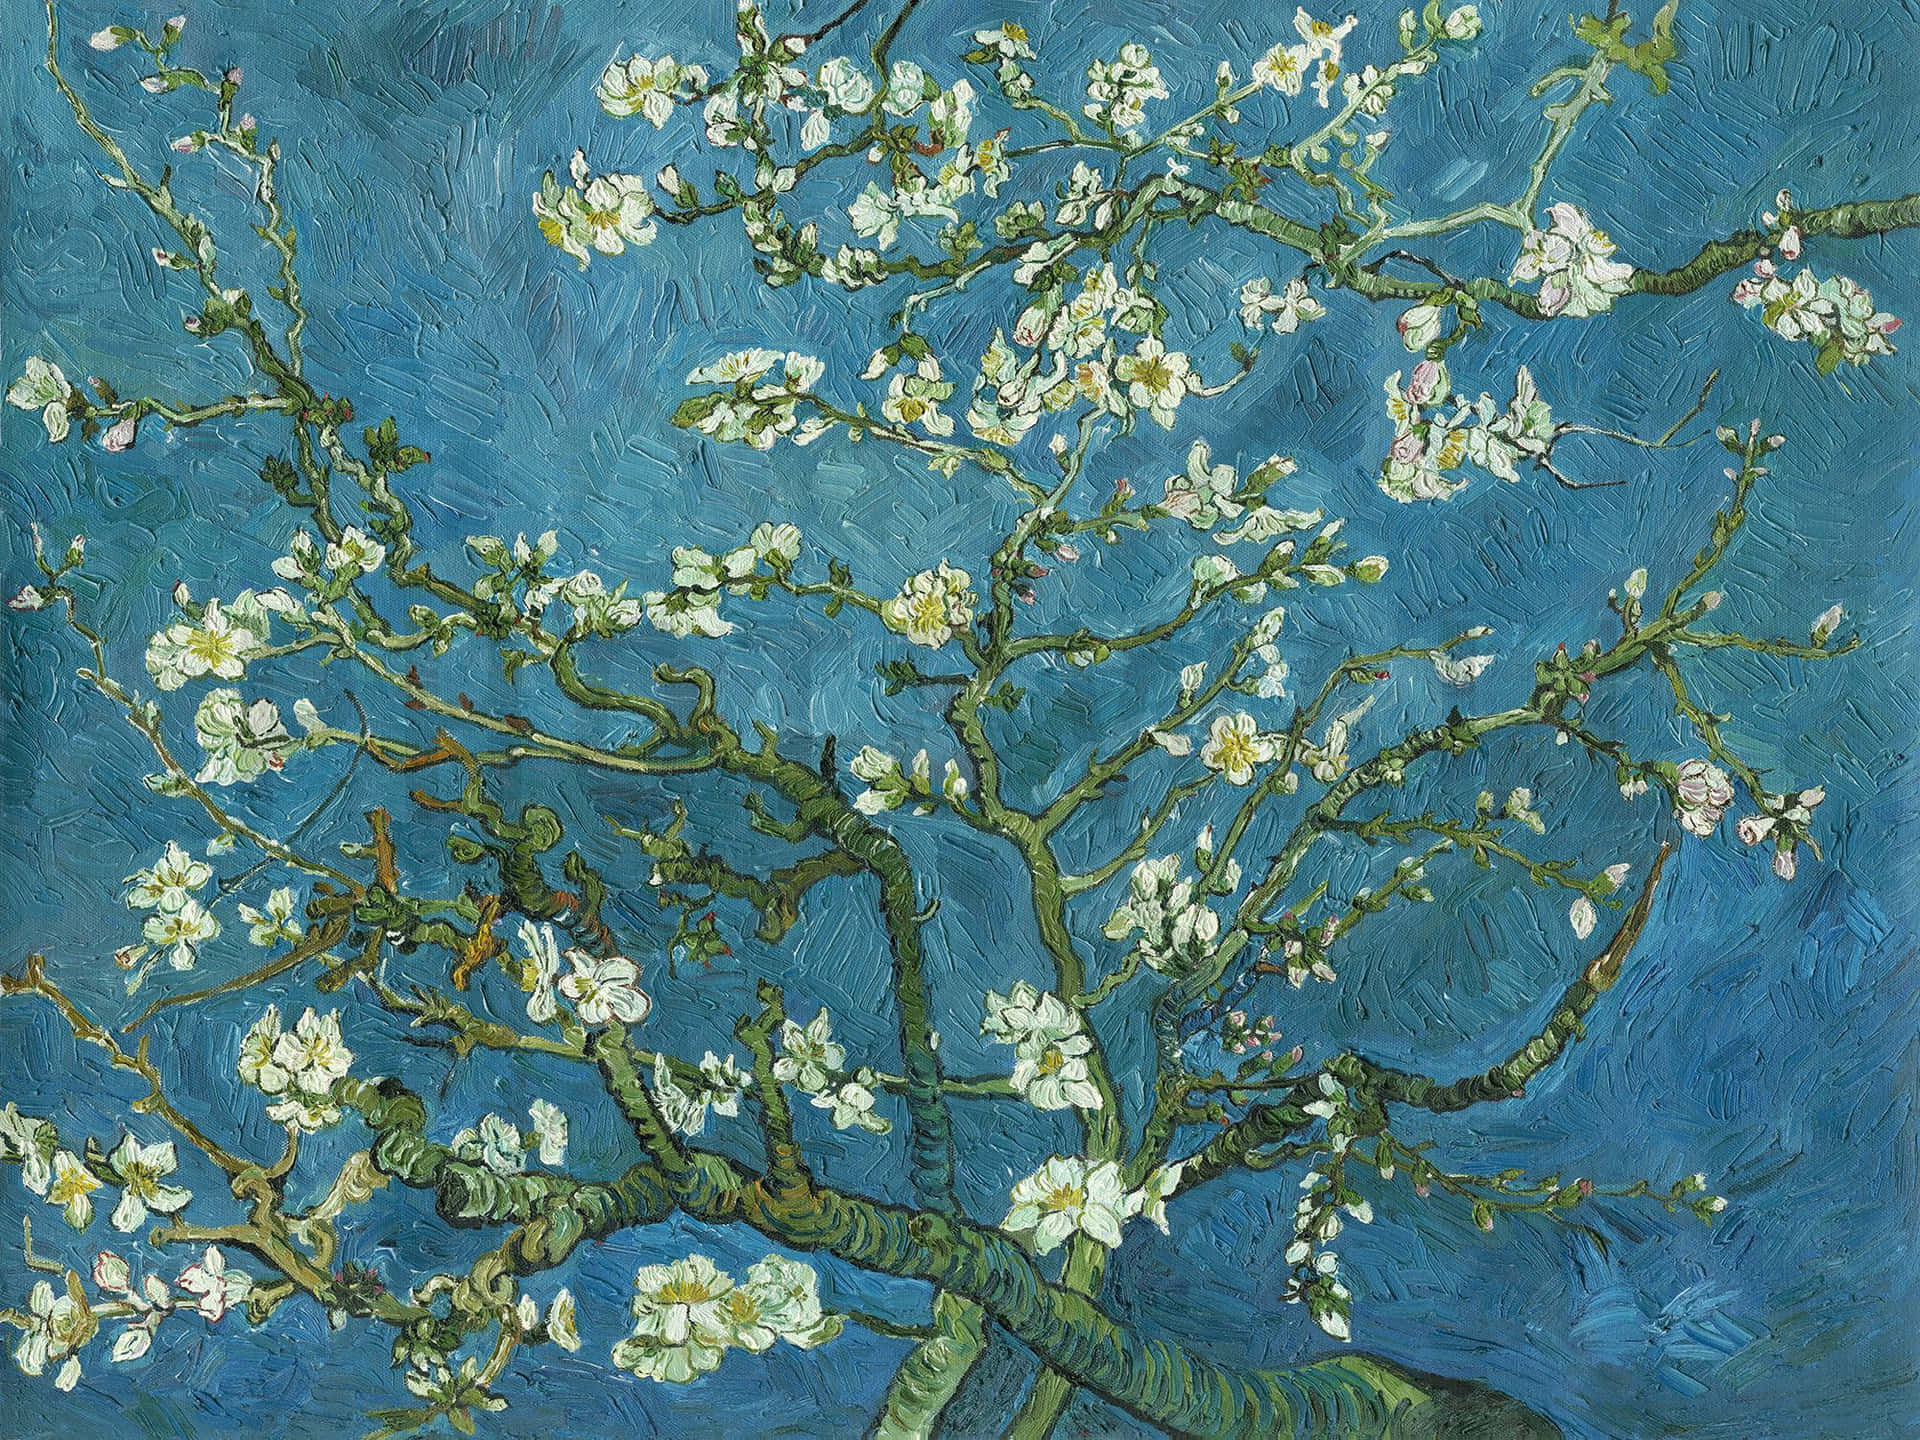 Einikonisches Gemälde Von Mandelblüten Von Vincent Van Gogh. Wallpaper